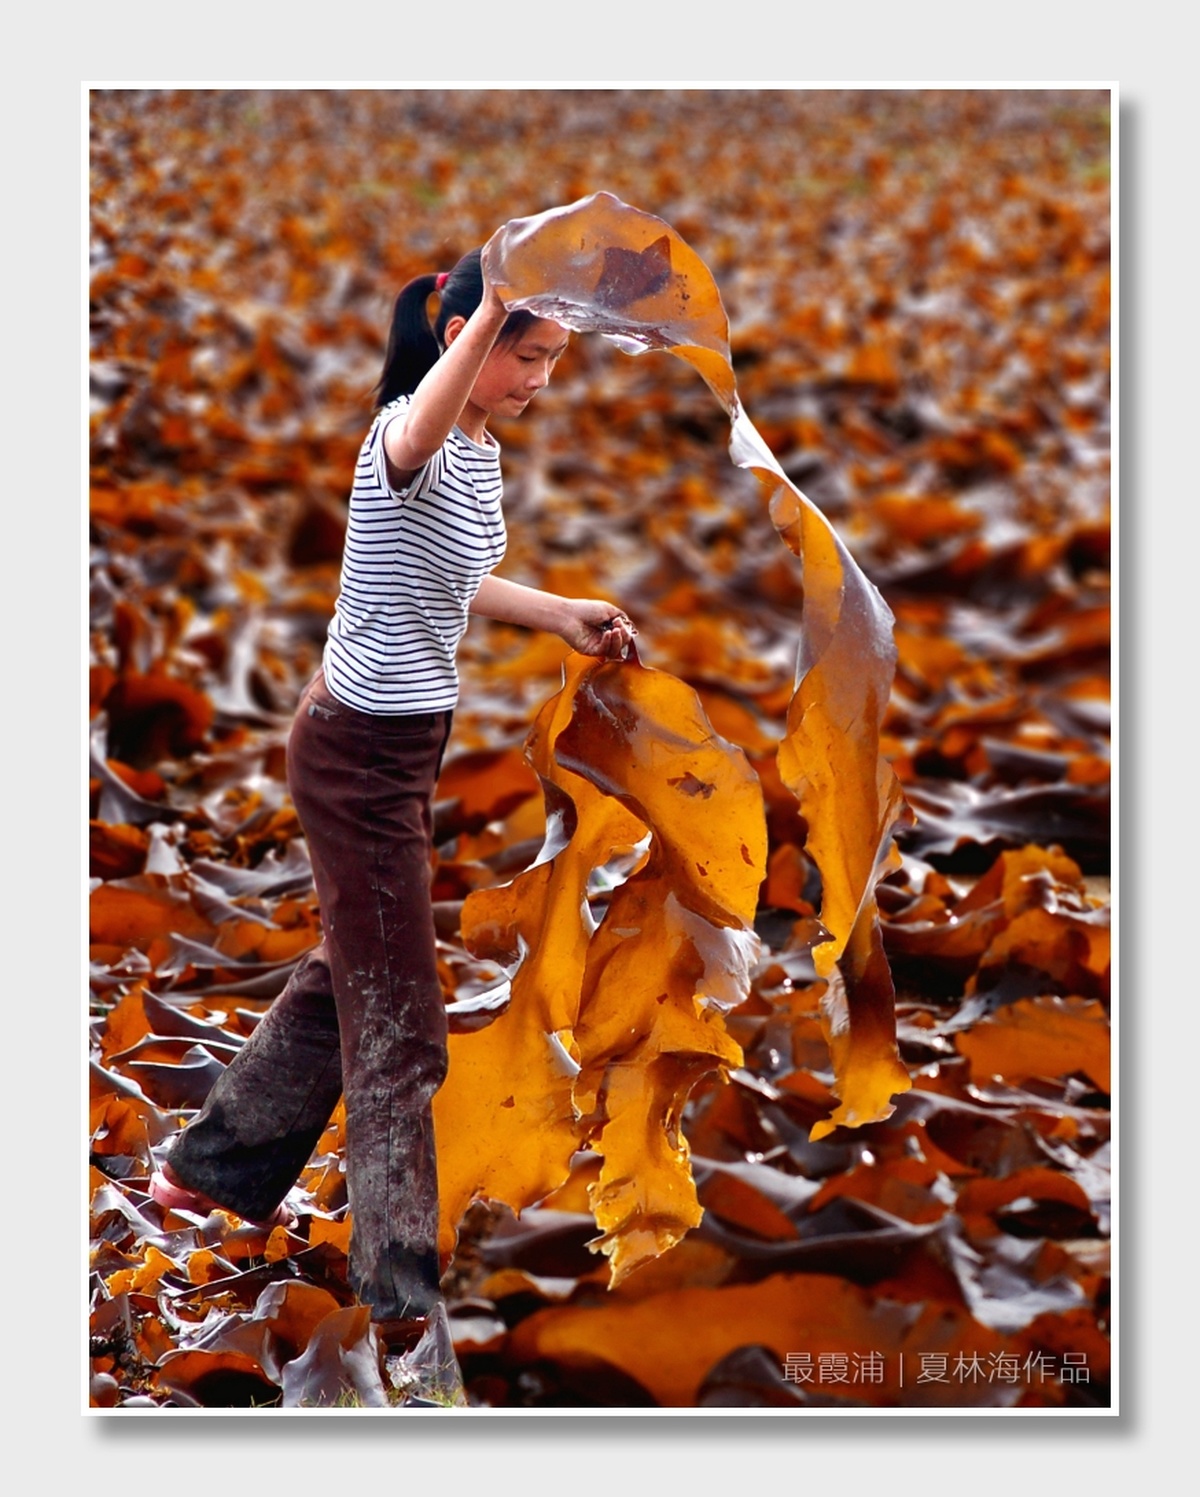 一个小男孩或小女孩在秋天的落叶地里拿着一片叶子